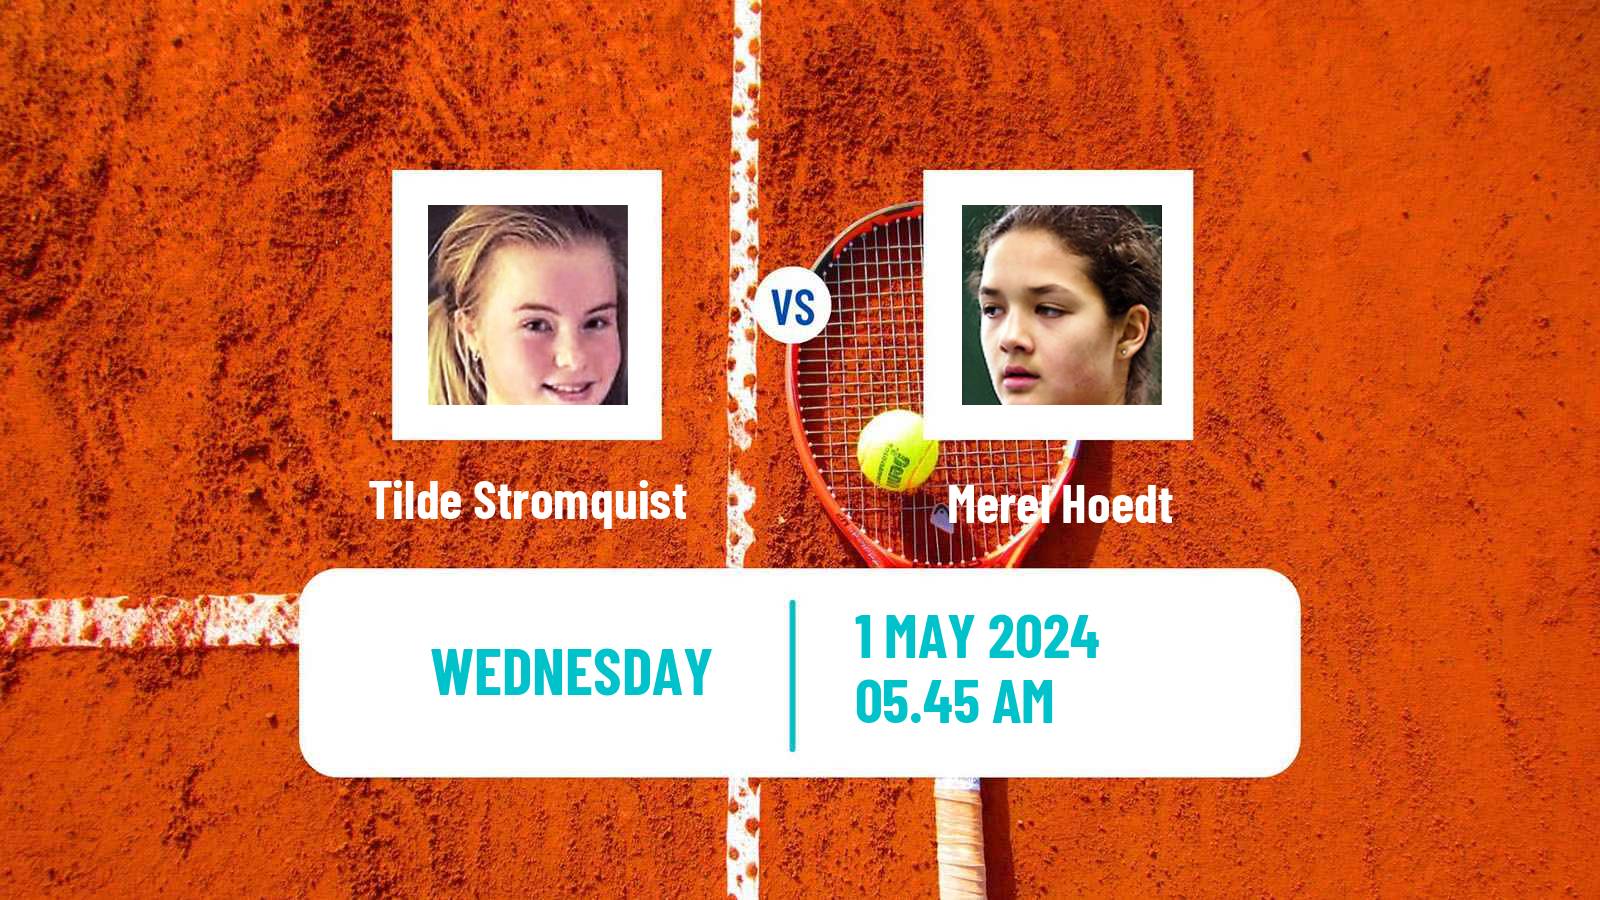 Tennis ITF W15 Varberg Women Tilde Stromquist - Merel Hoedt